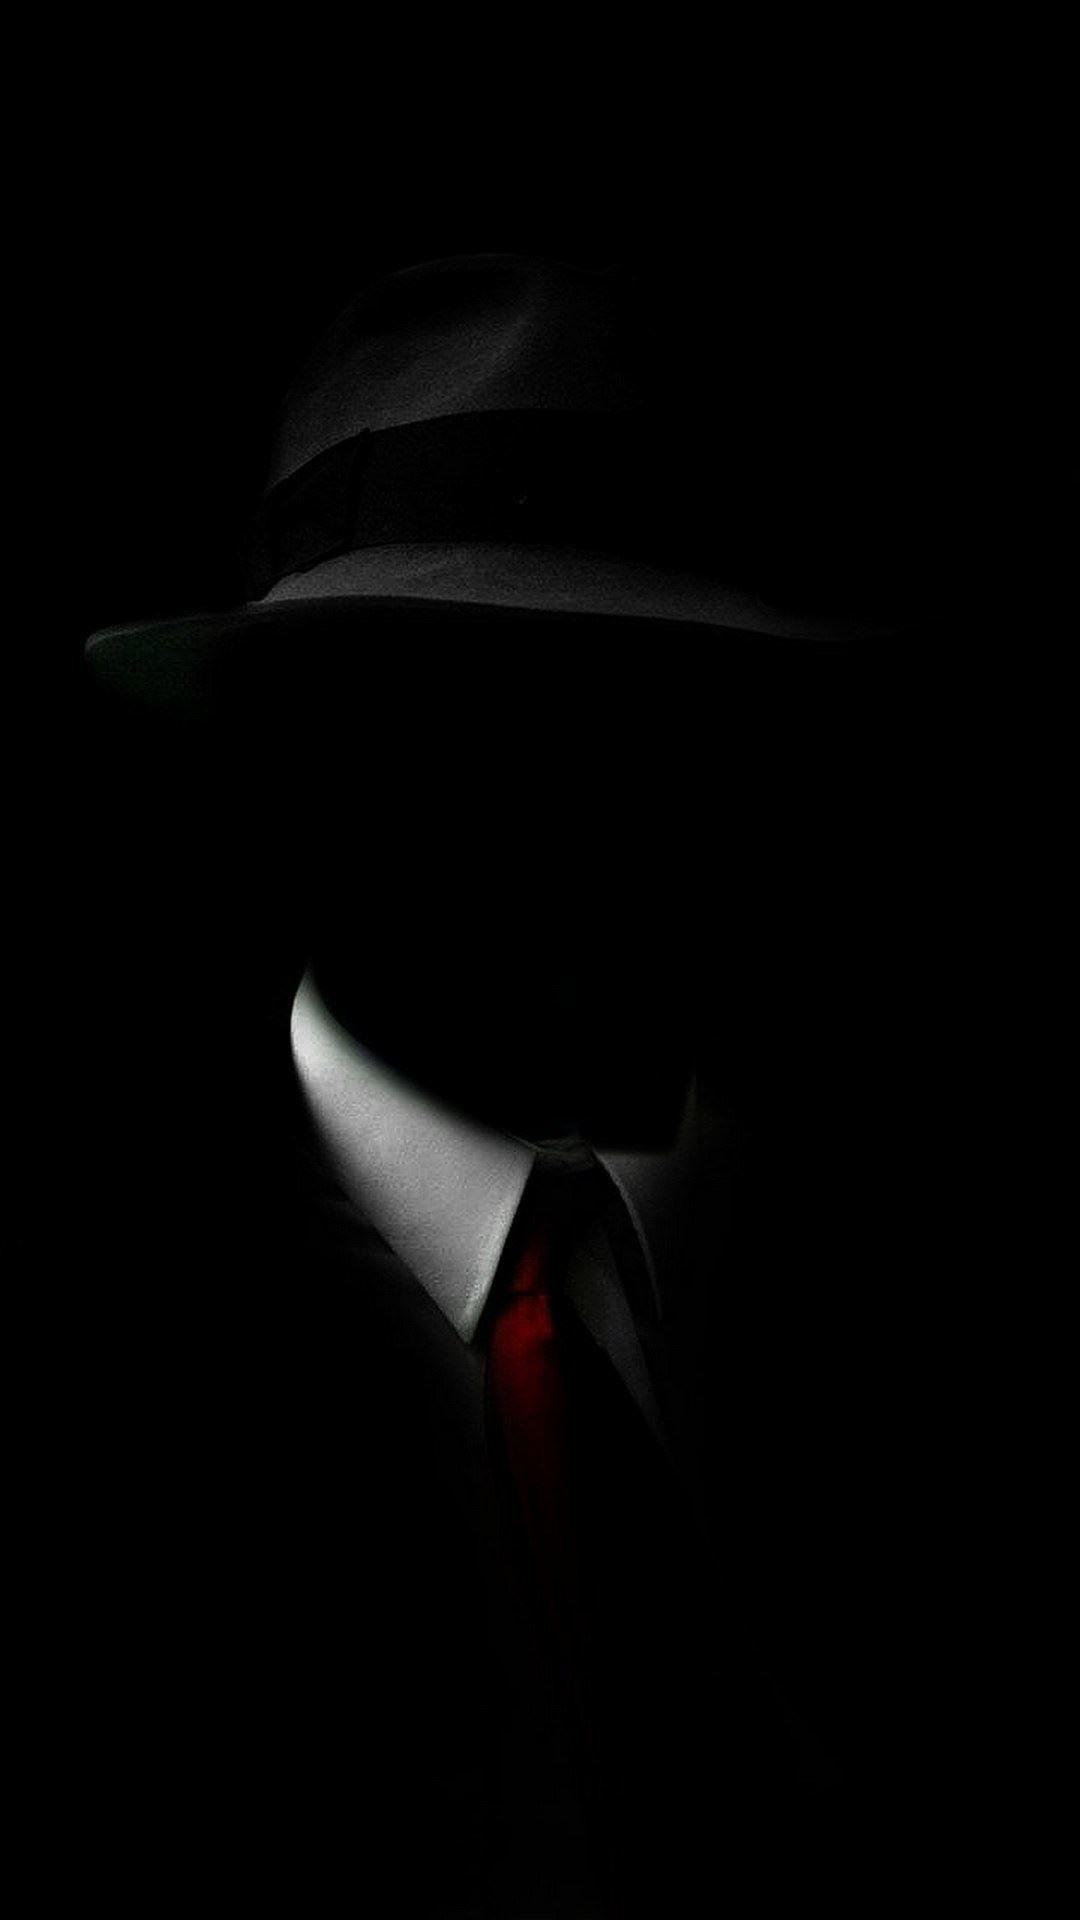 Shadow Man Black Suit Hat Red Tie iPhone 6 Plus HD Wallpaper. iPhone wallpaper for guys, Black wallpaper iphone, iPhone 6 plus wallpaper